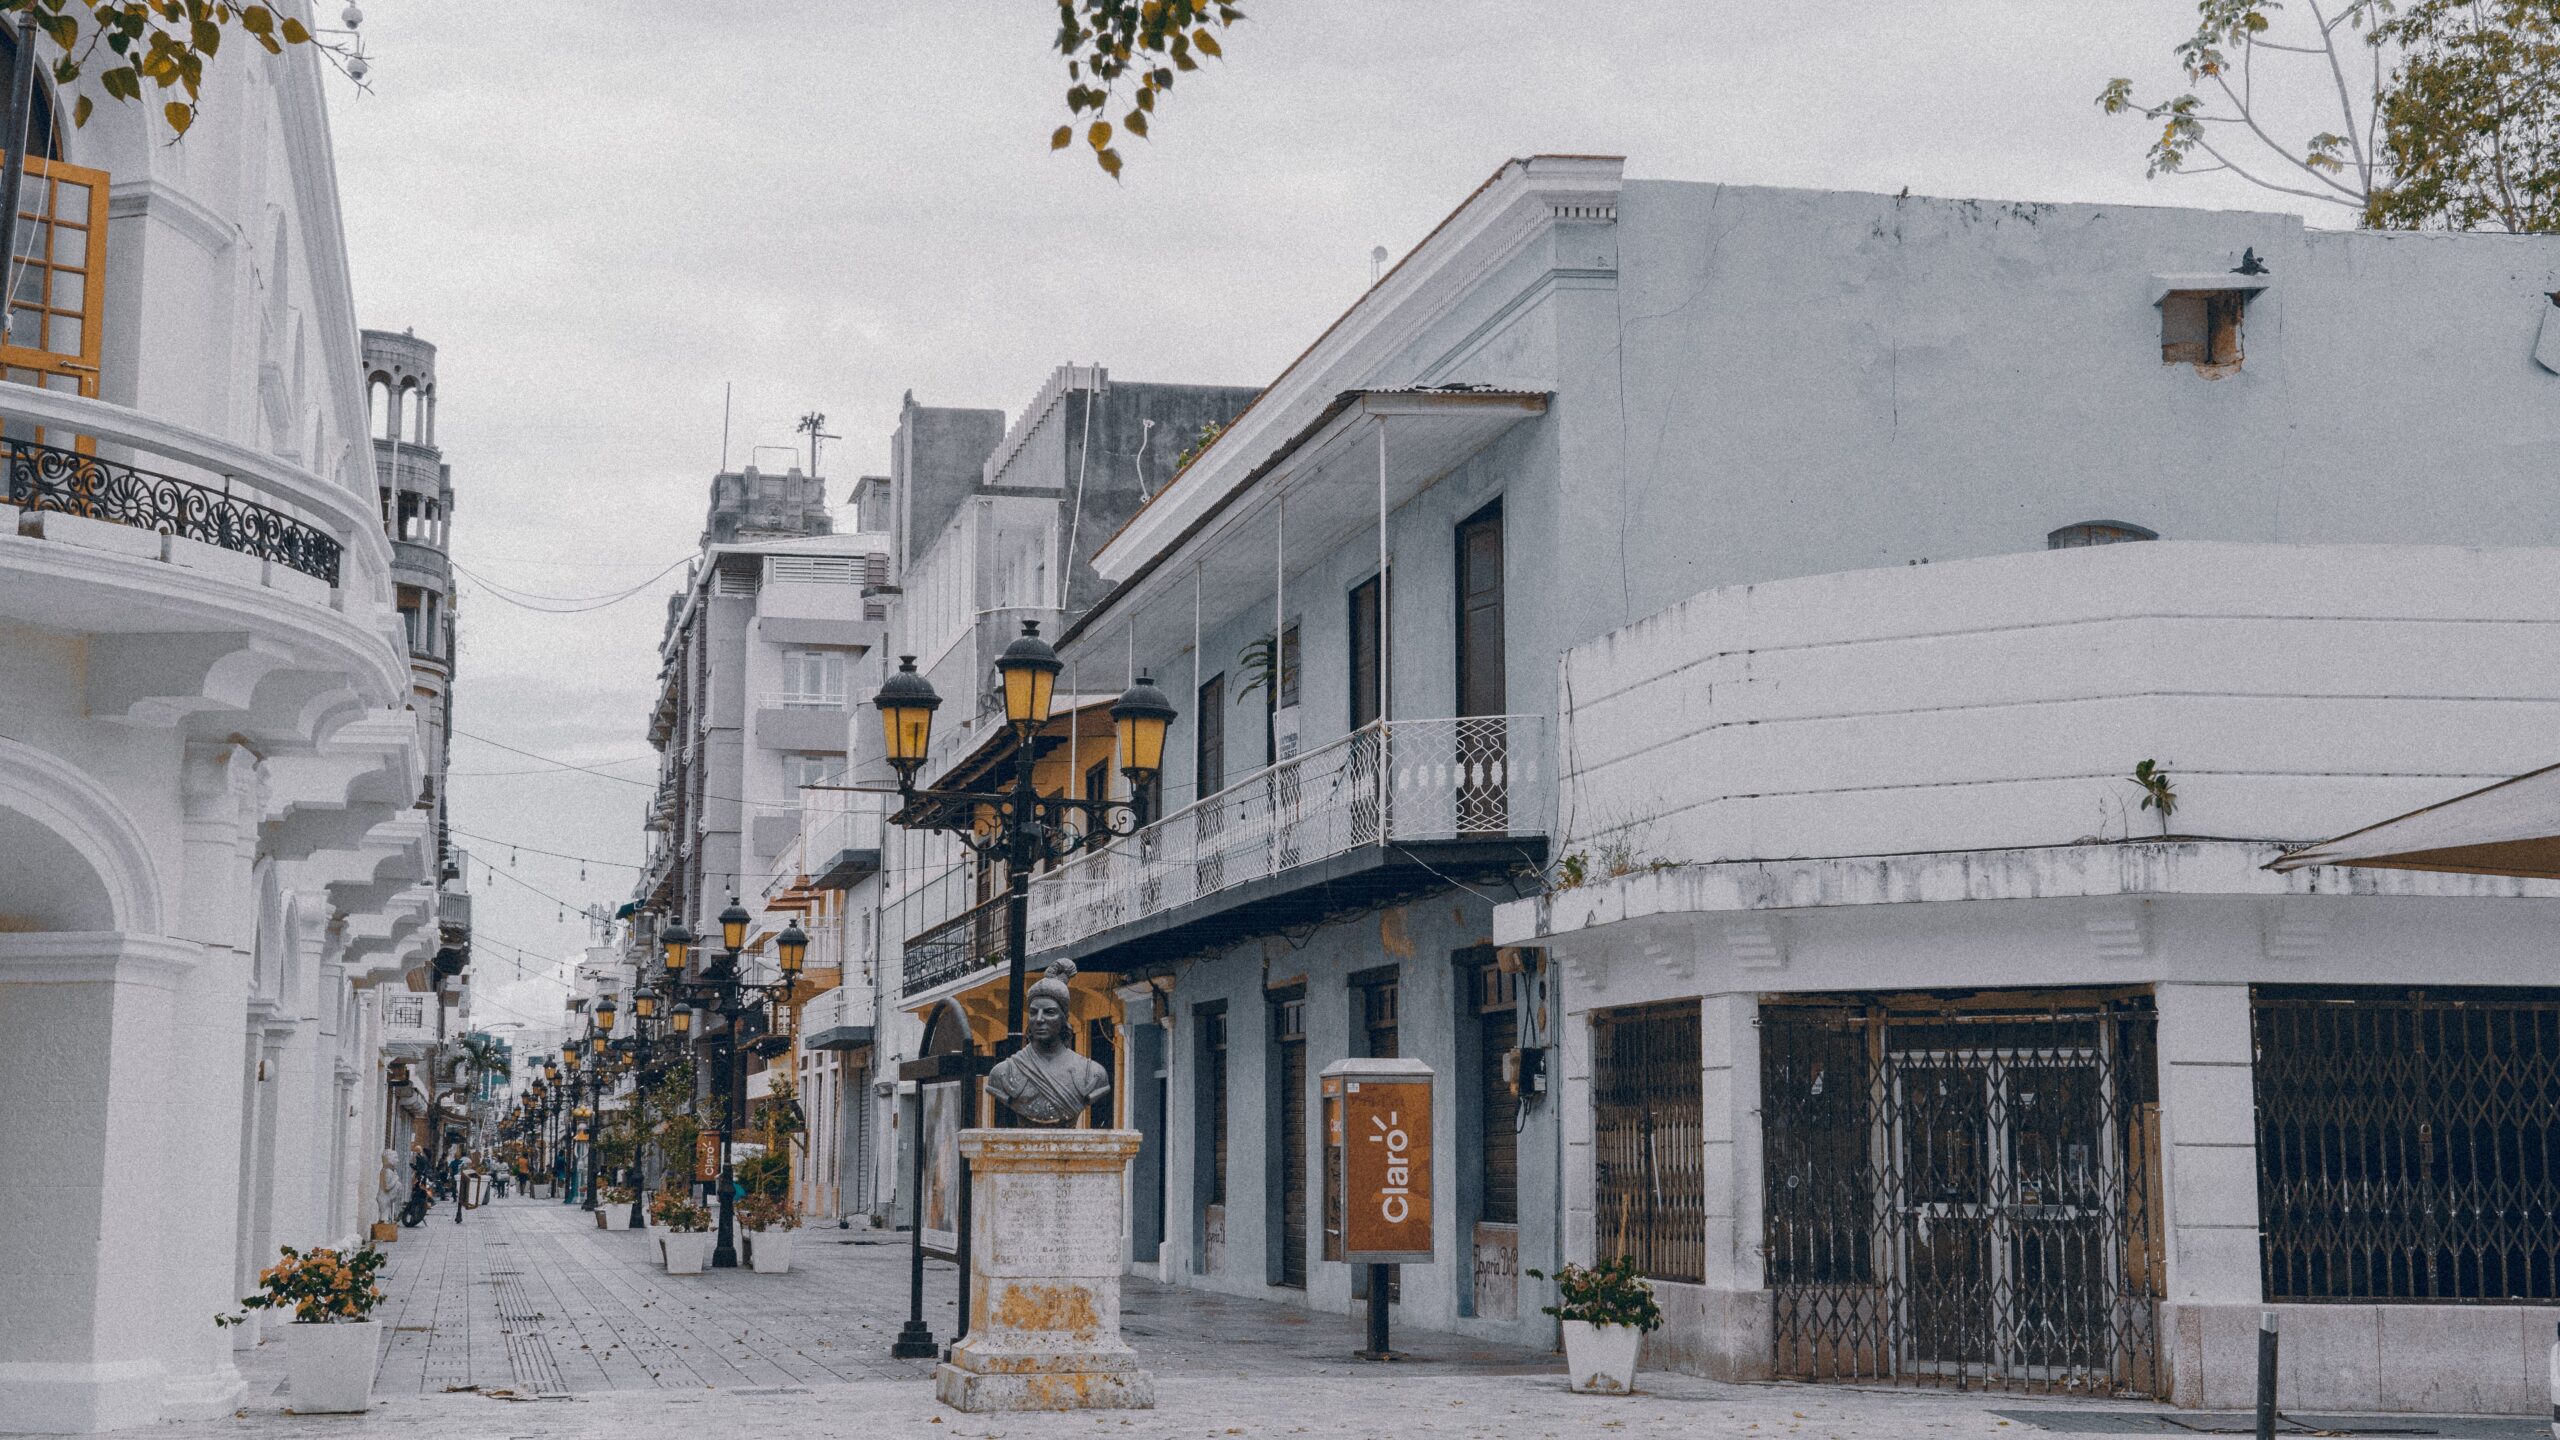 Ciudad Colonial, Santo Domingo, Dominican Republic